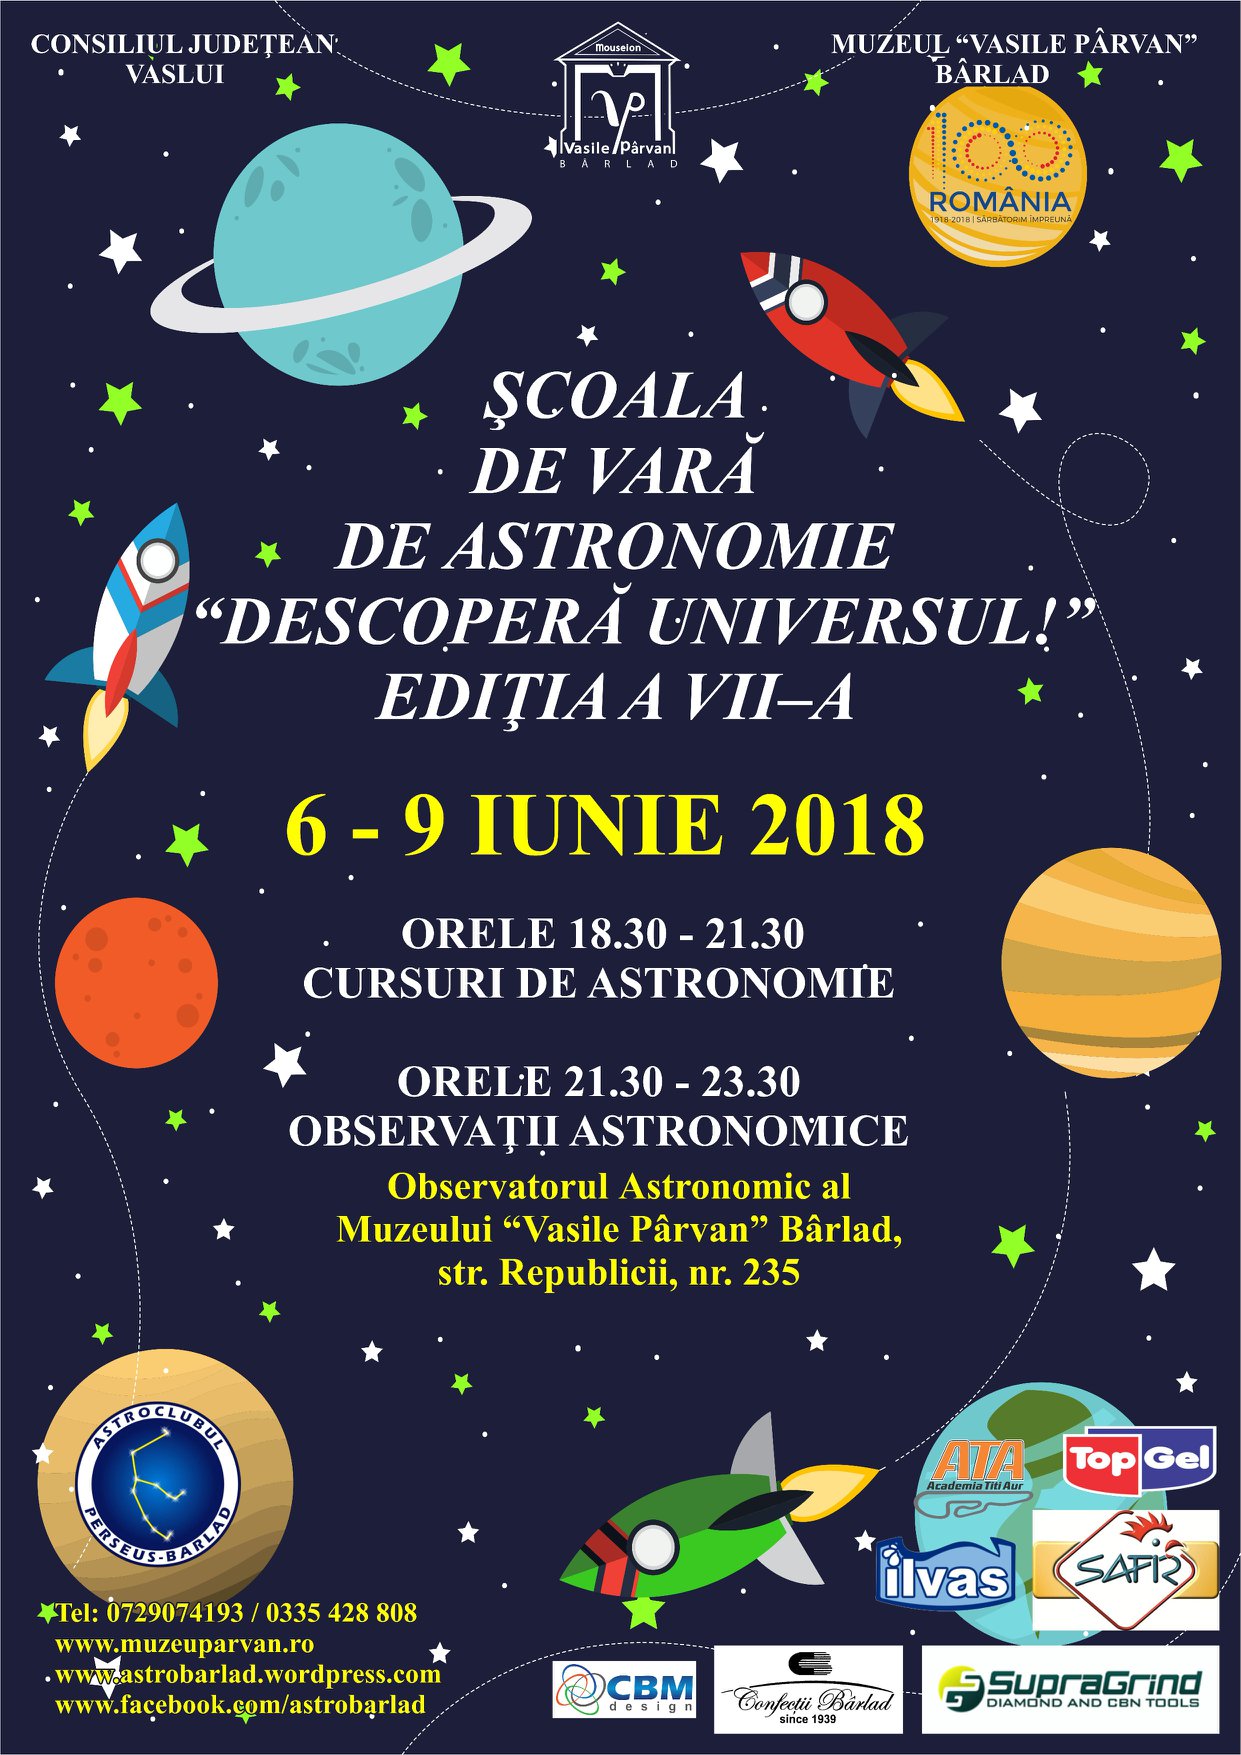 Bârlad – Şcoala de vară de Astronomie “Descoperă universul!” ediţia a vii-a, 6 – 9 iunie 2018